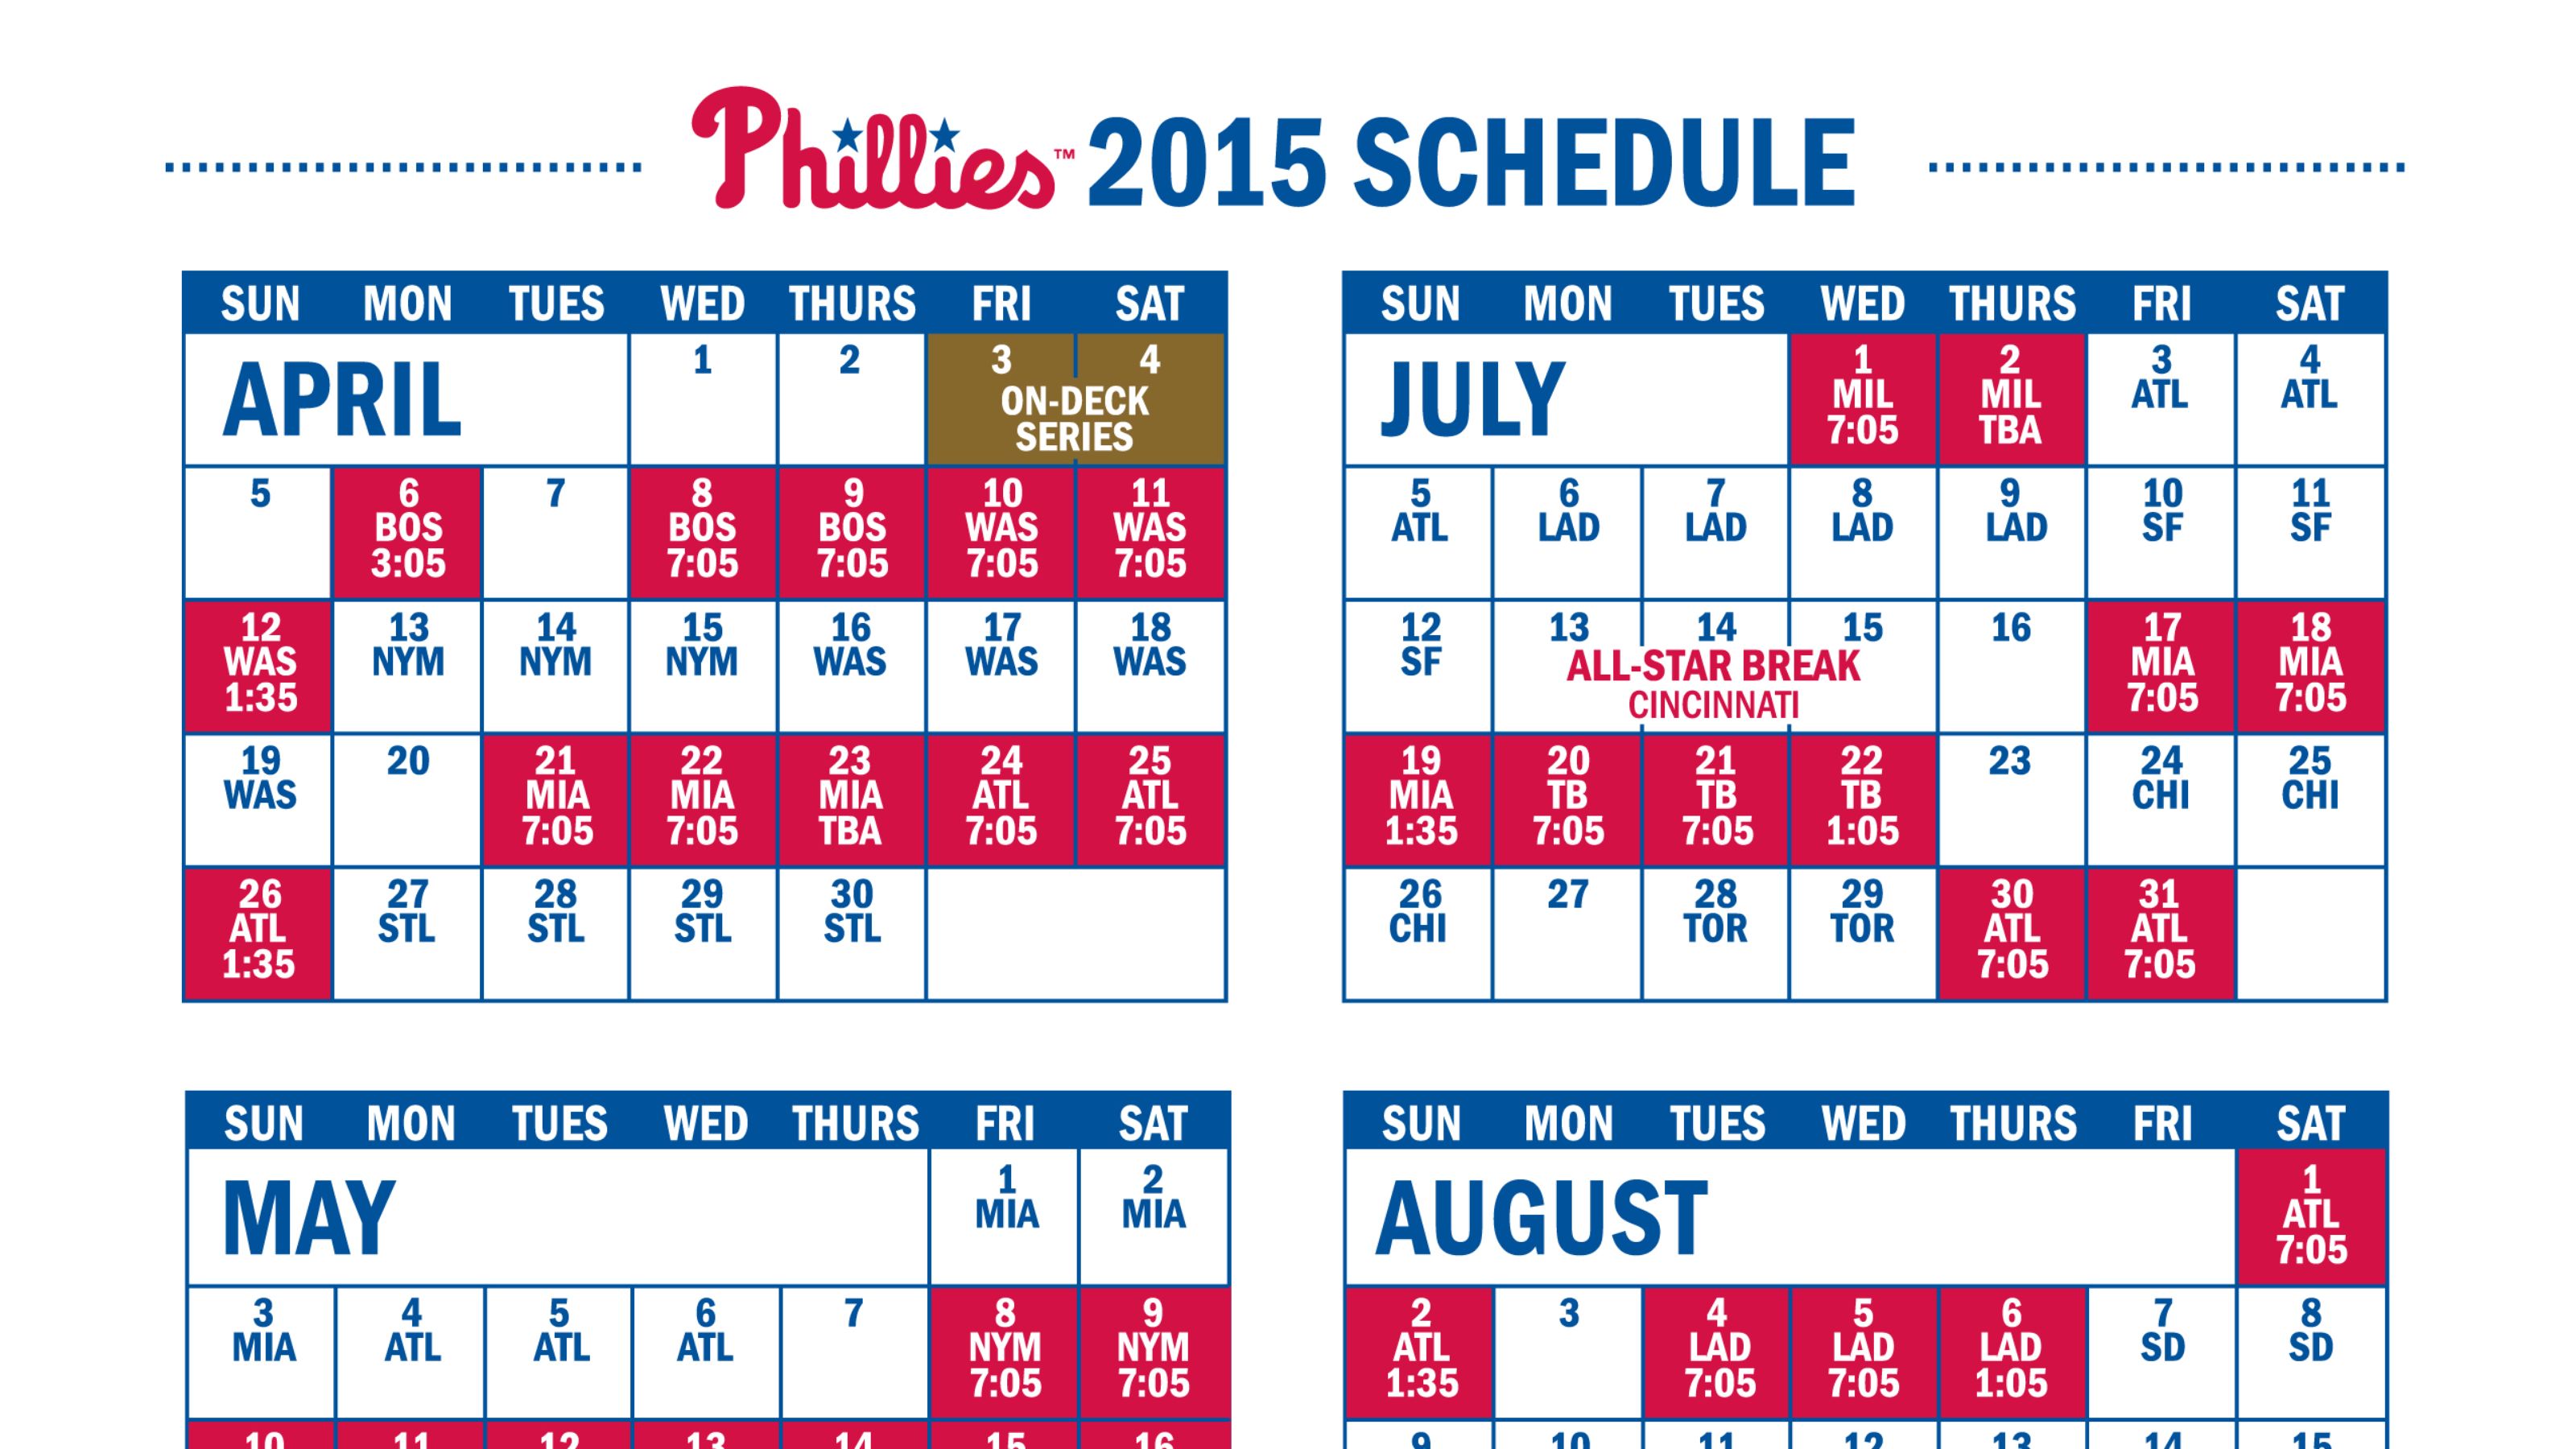 Phillies release 2015 schedule